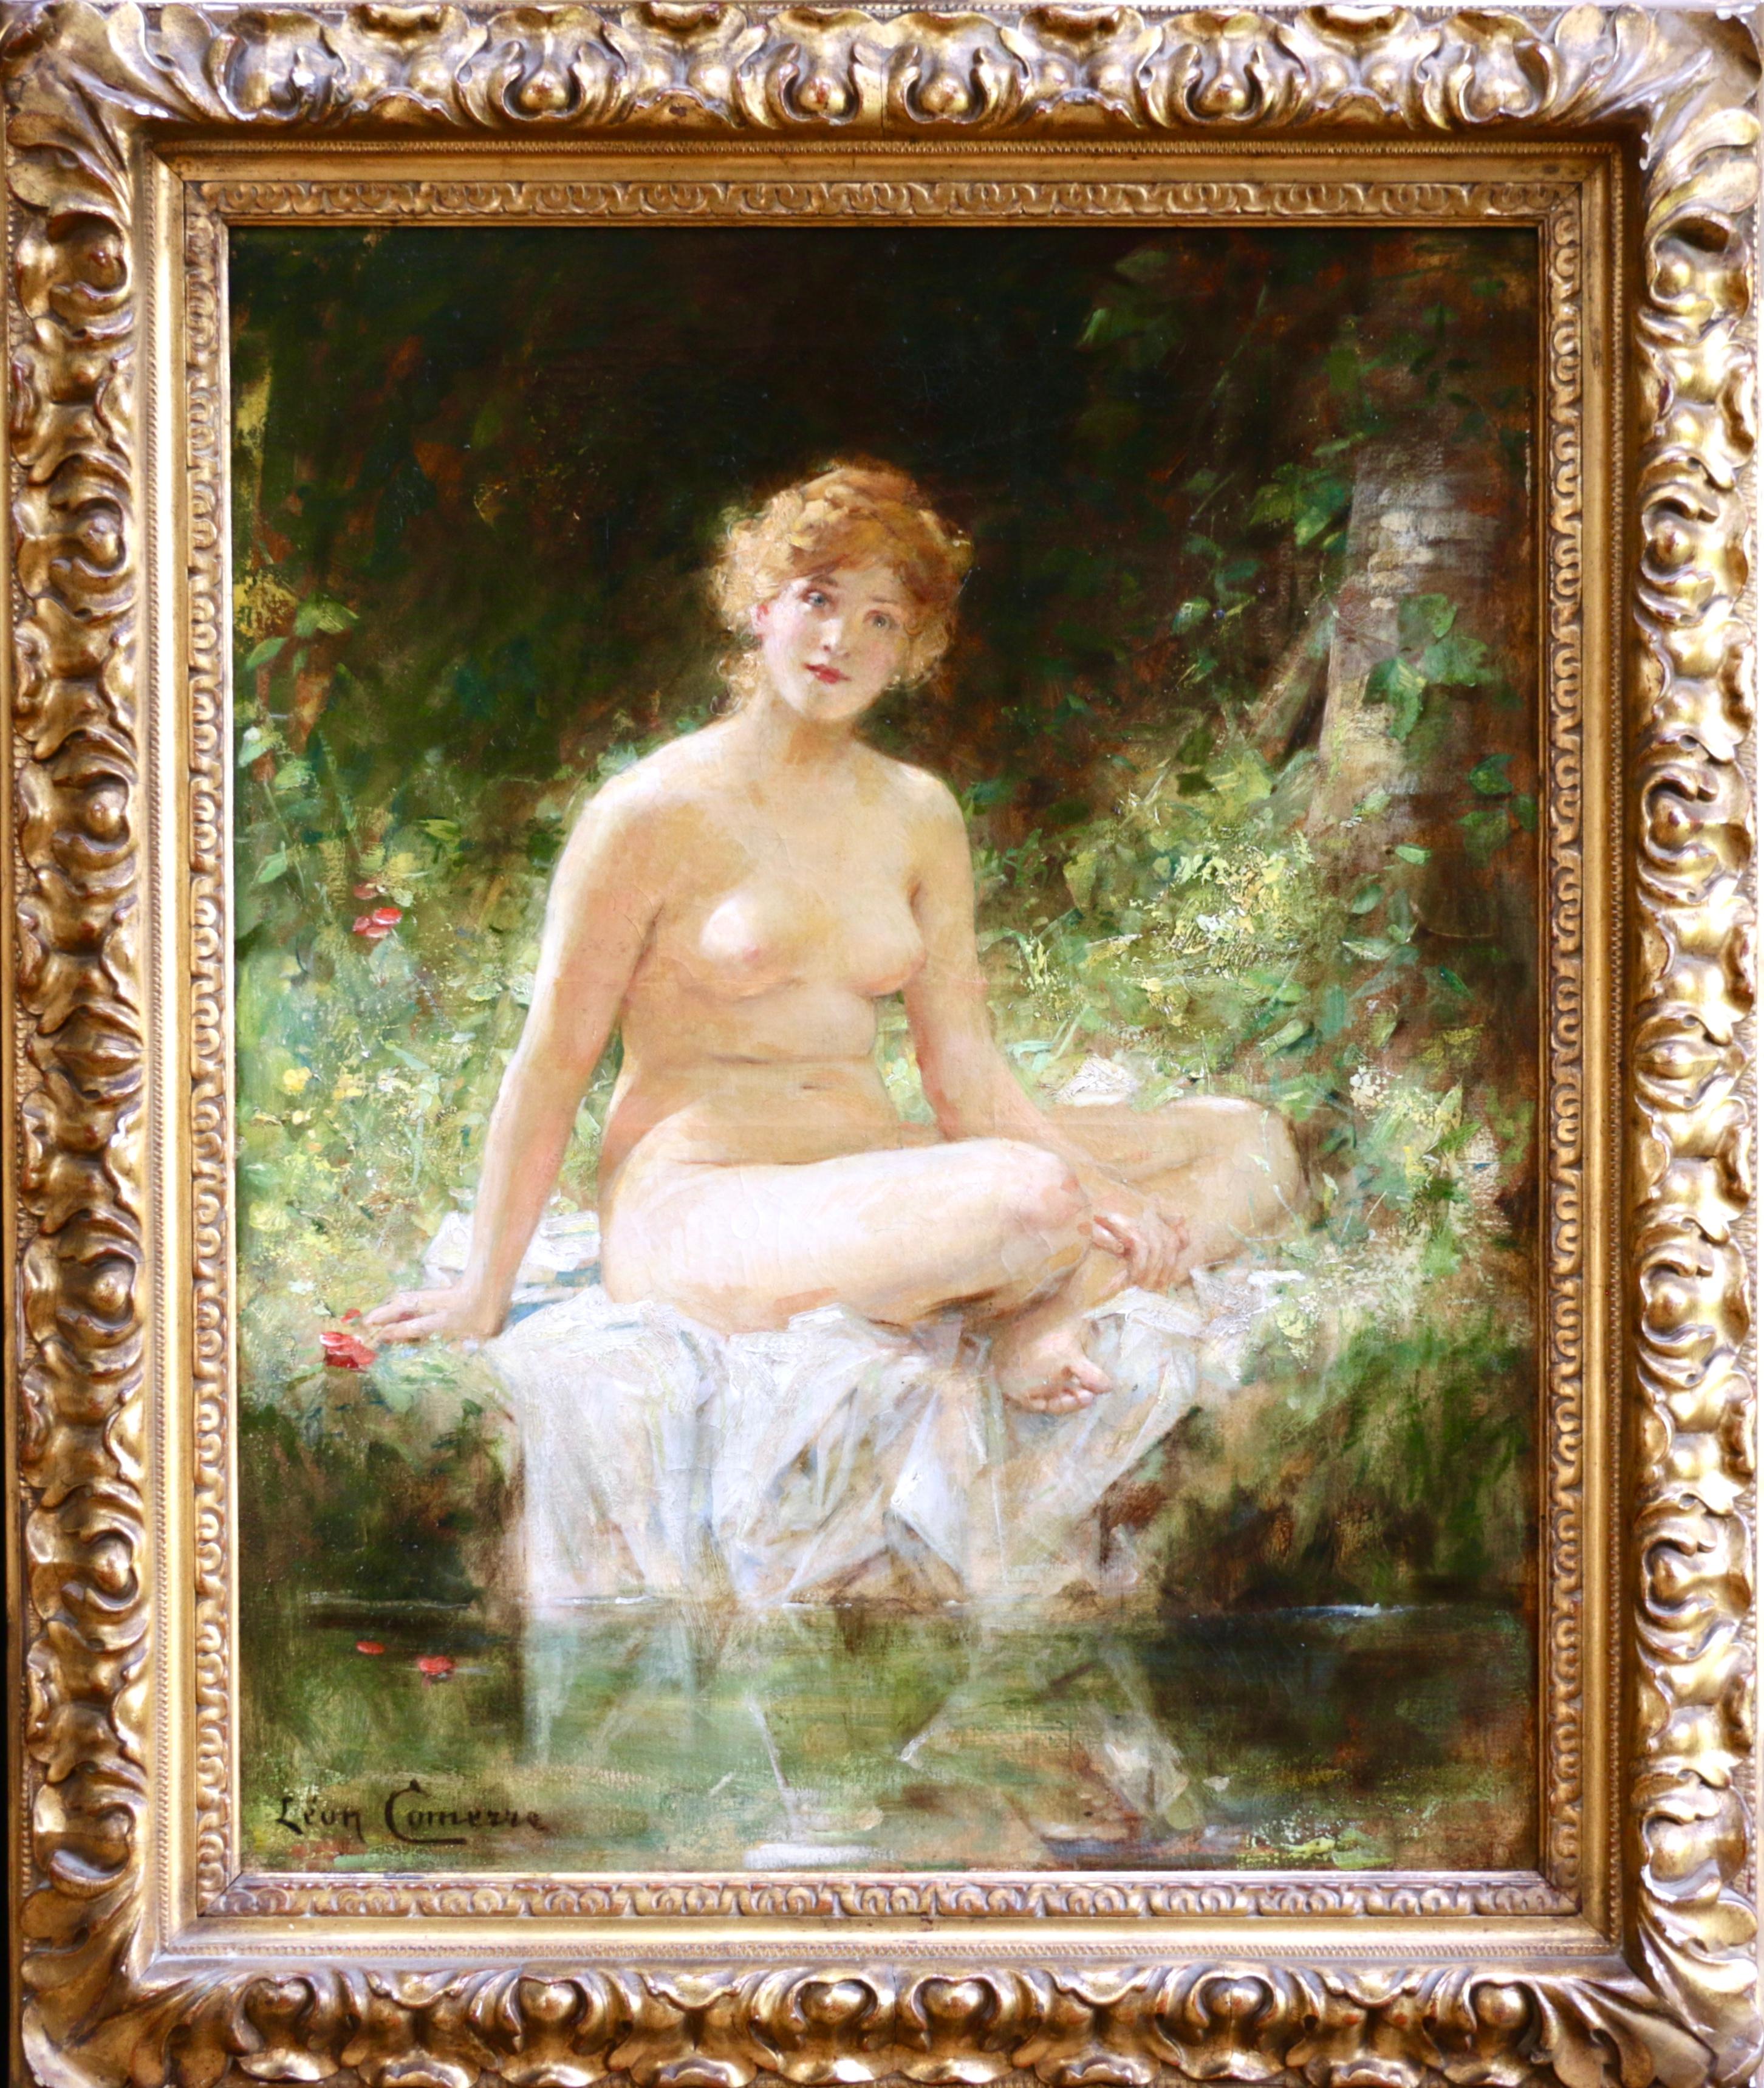 Léon François Comerre Nude Painting - La Baigneuse - 19th Century Oil, Nude Figure by River Landscape by Leon Comerre